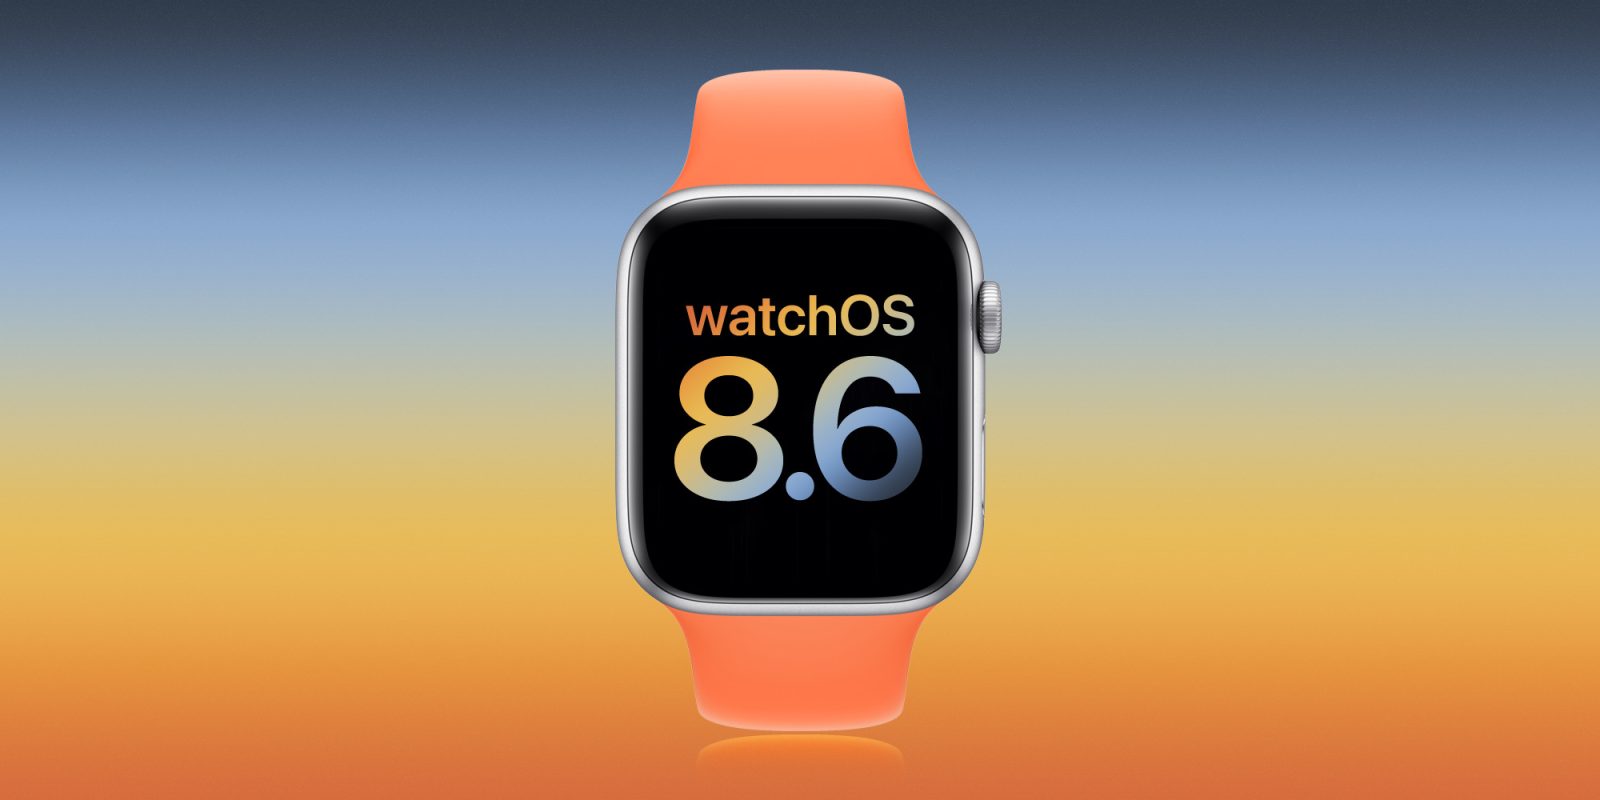 watchOS 8.6 beta